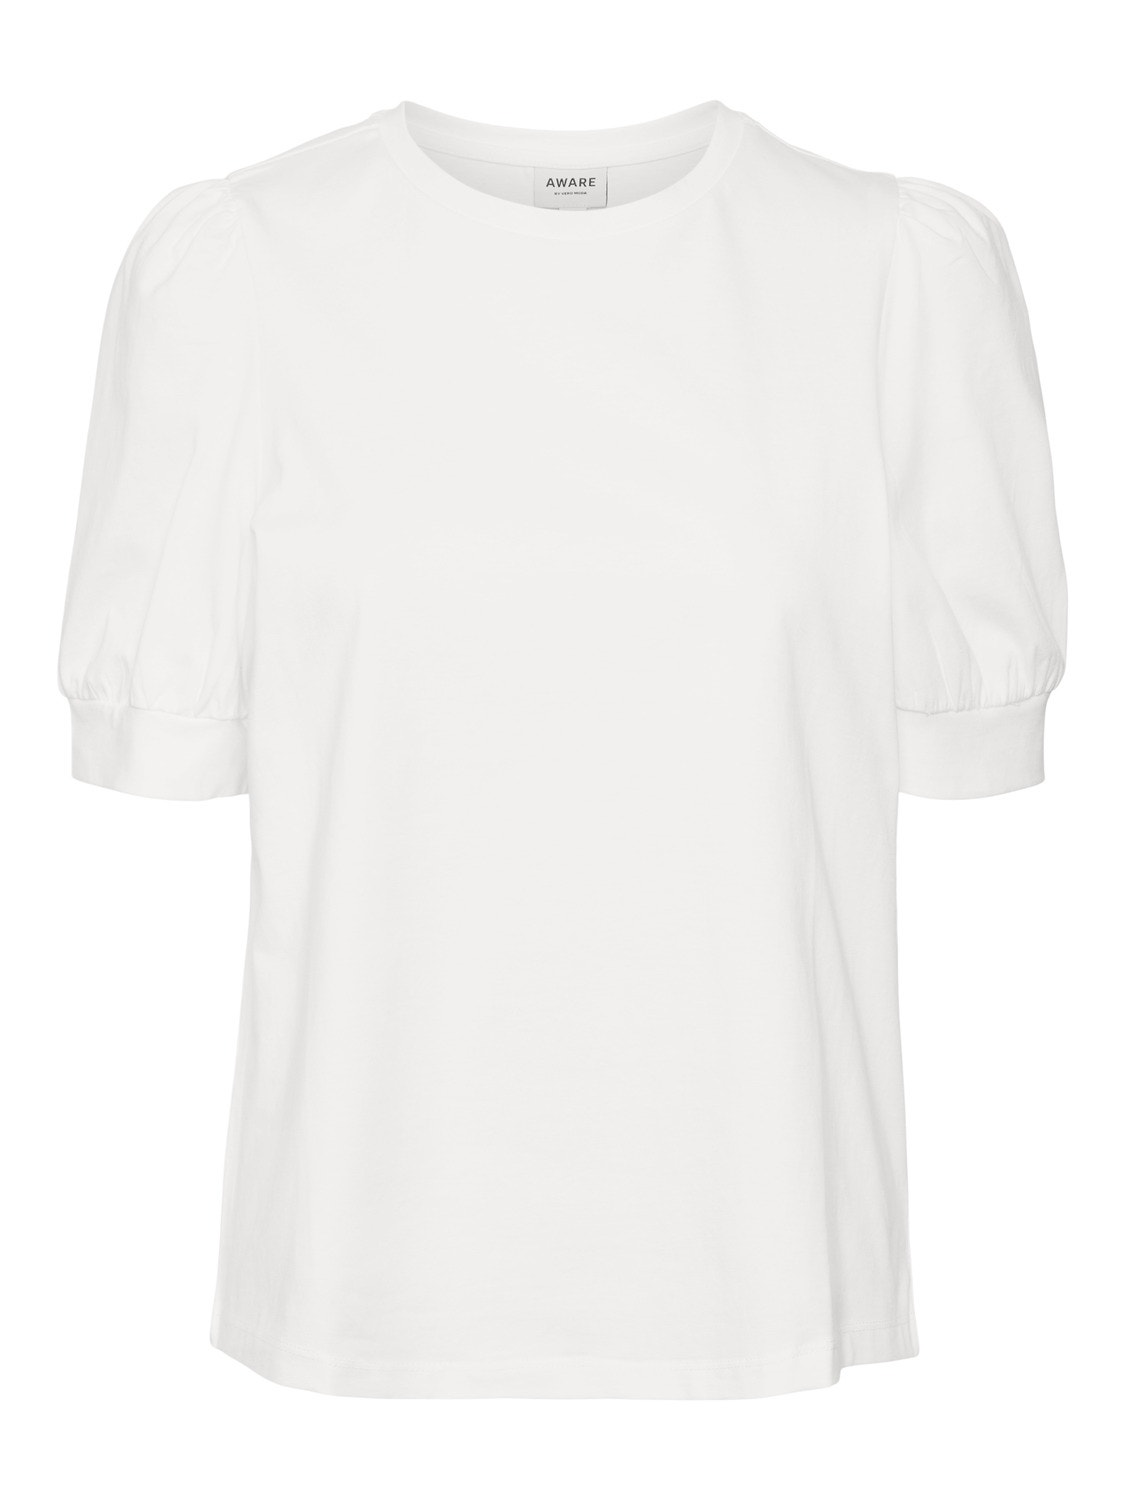 Vero Moda VMKERRY T-shirts -Bright White - 10275520